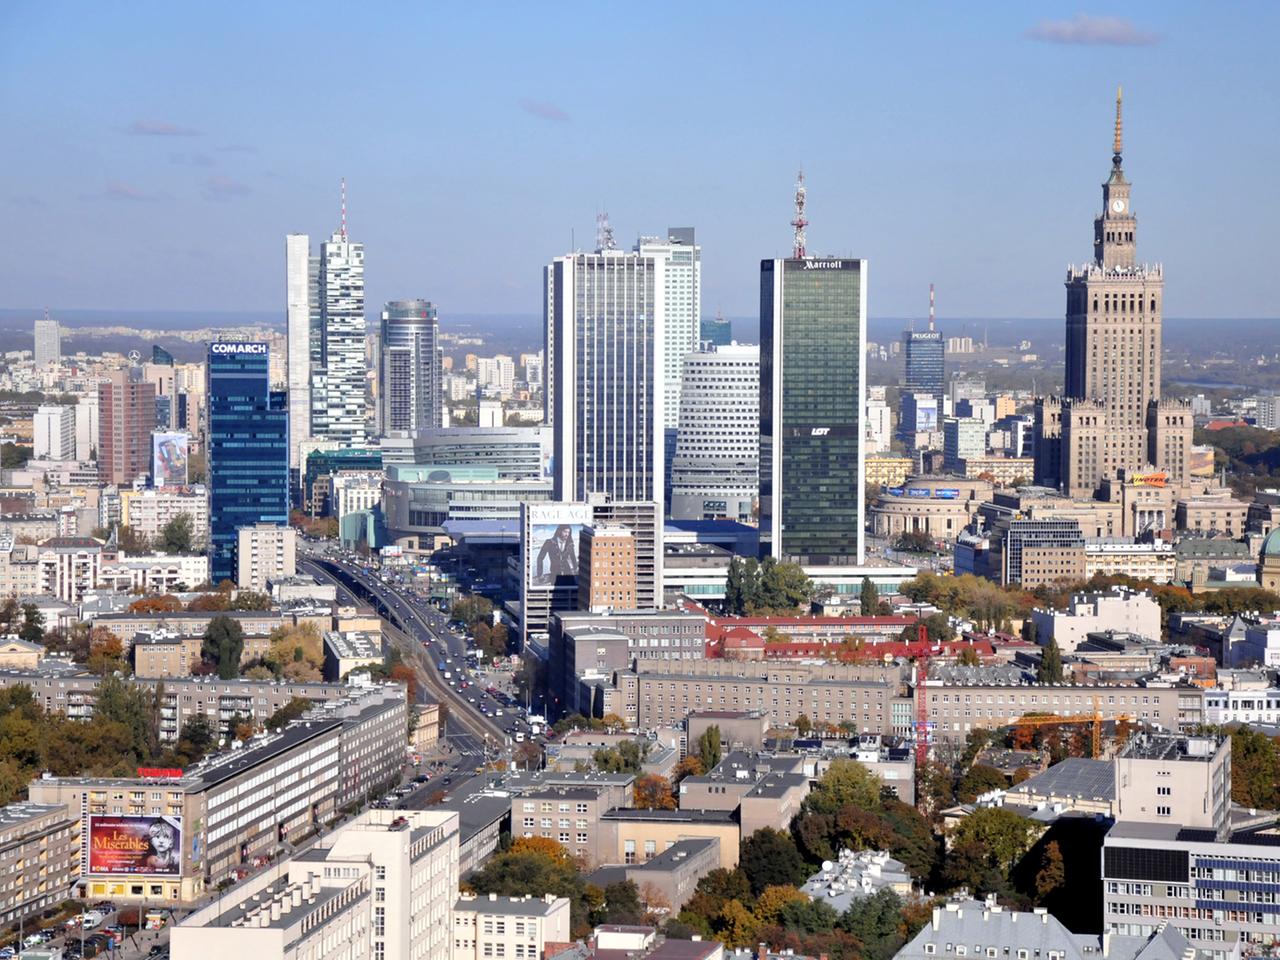 Auf dem Bild sind Hochhäuser im Zentrum der polnischen Hauptstadt Warschau zu sehen, aufgenommen am 13.10.2010.